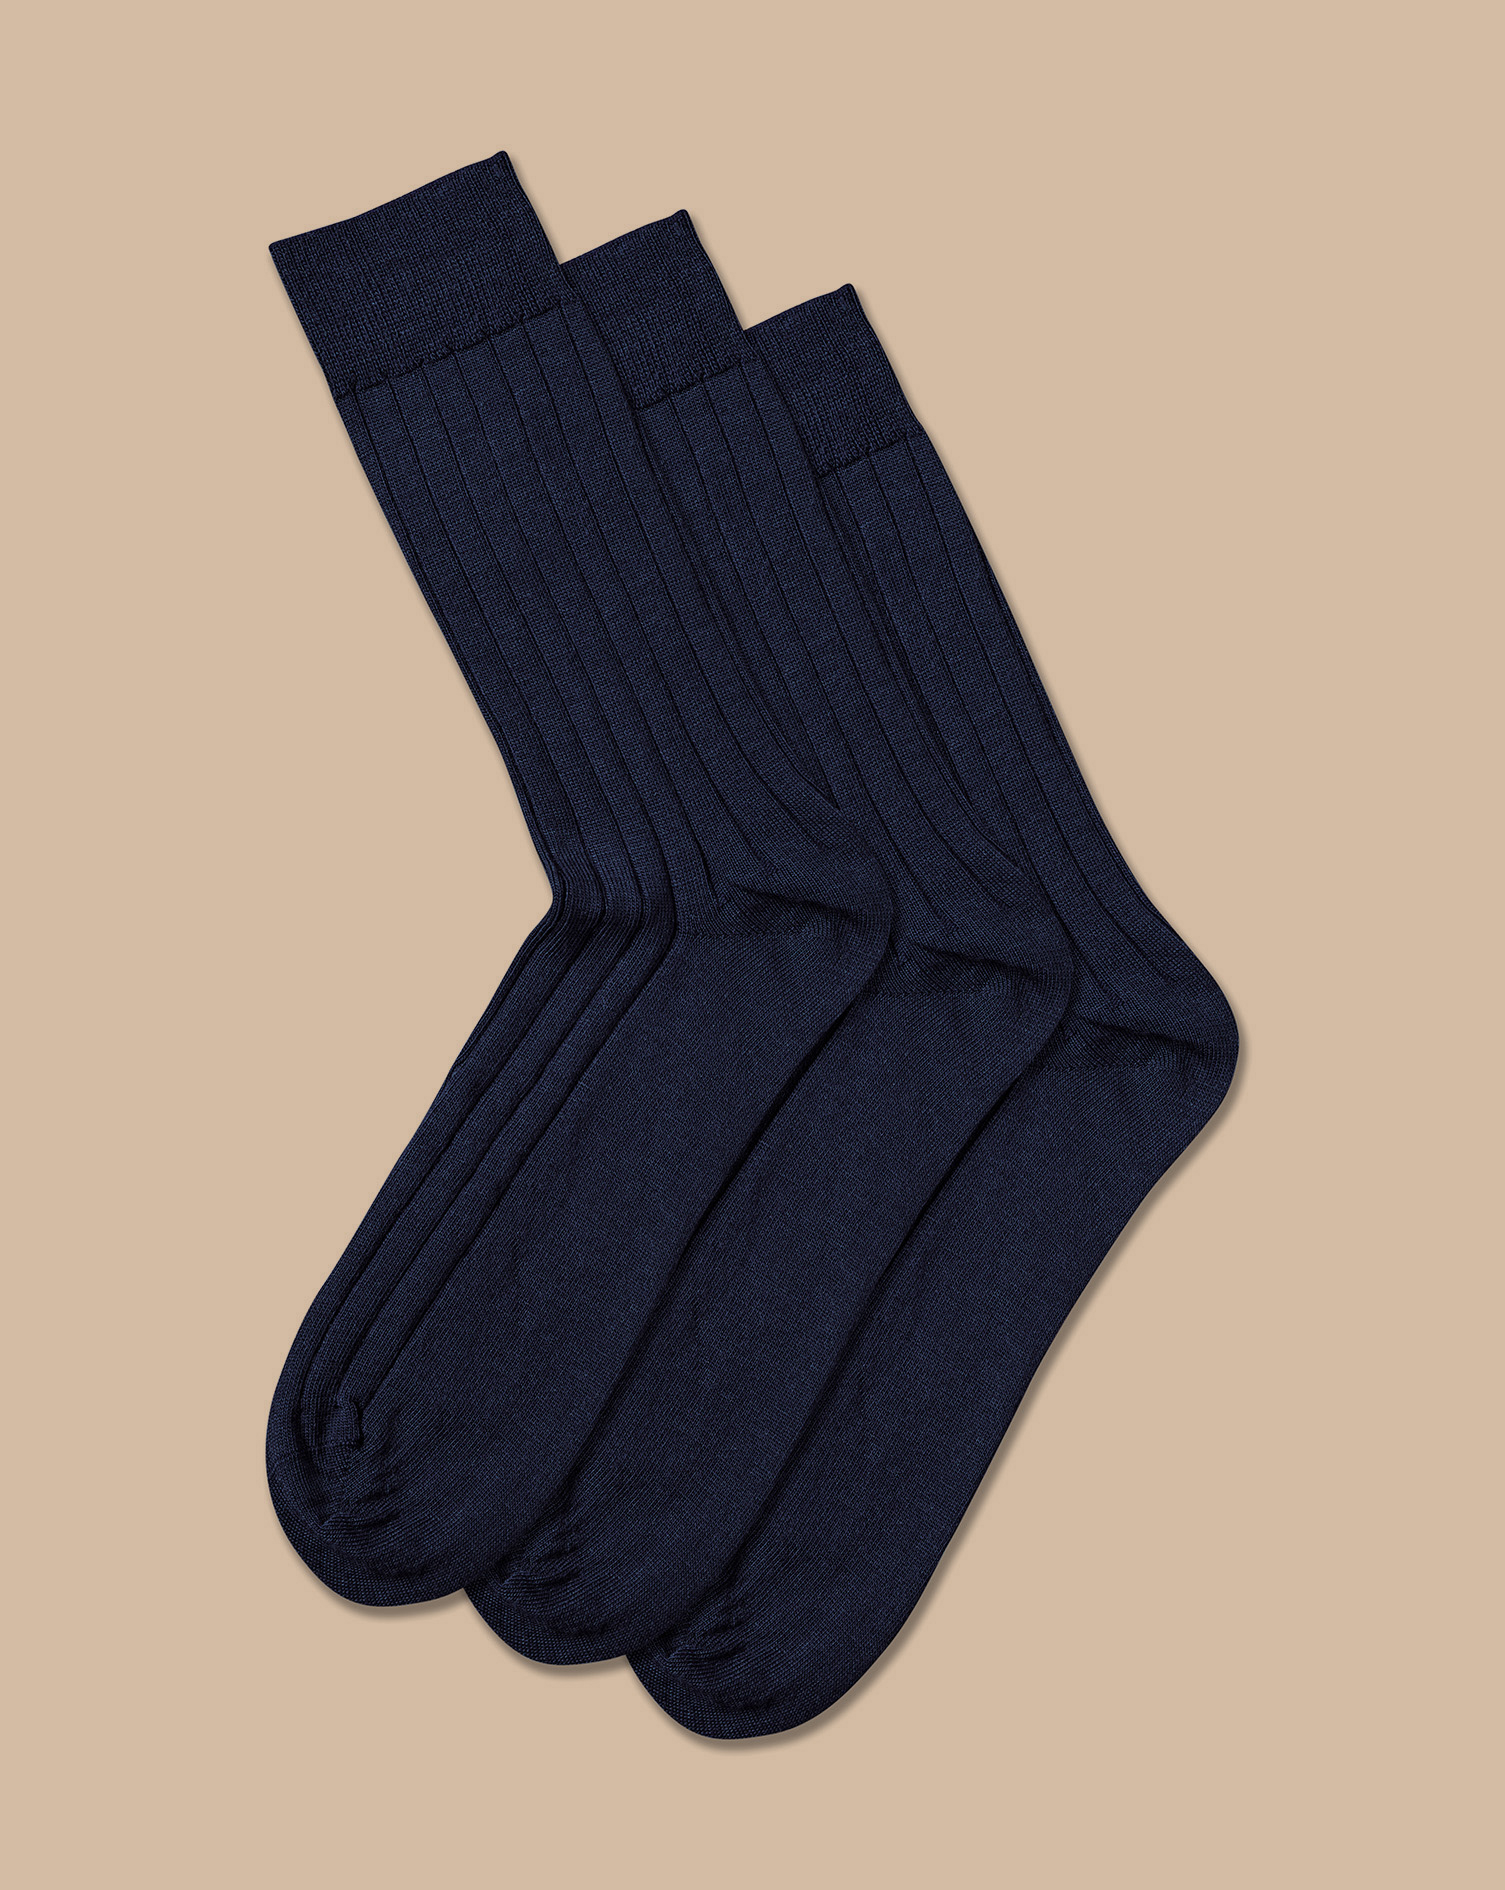 Men's Charles Tyrwhitt Merino Blend 3 Pack Socks - Denim Blue Size 6-10 Wool
